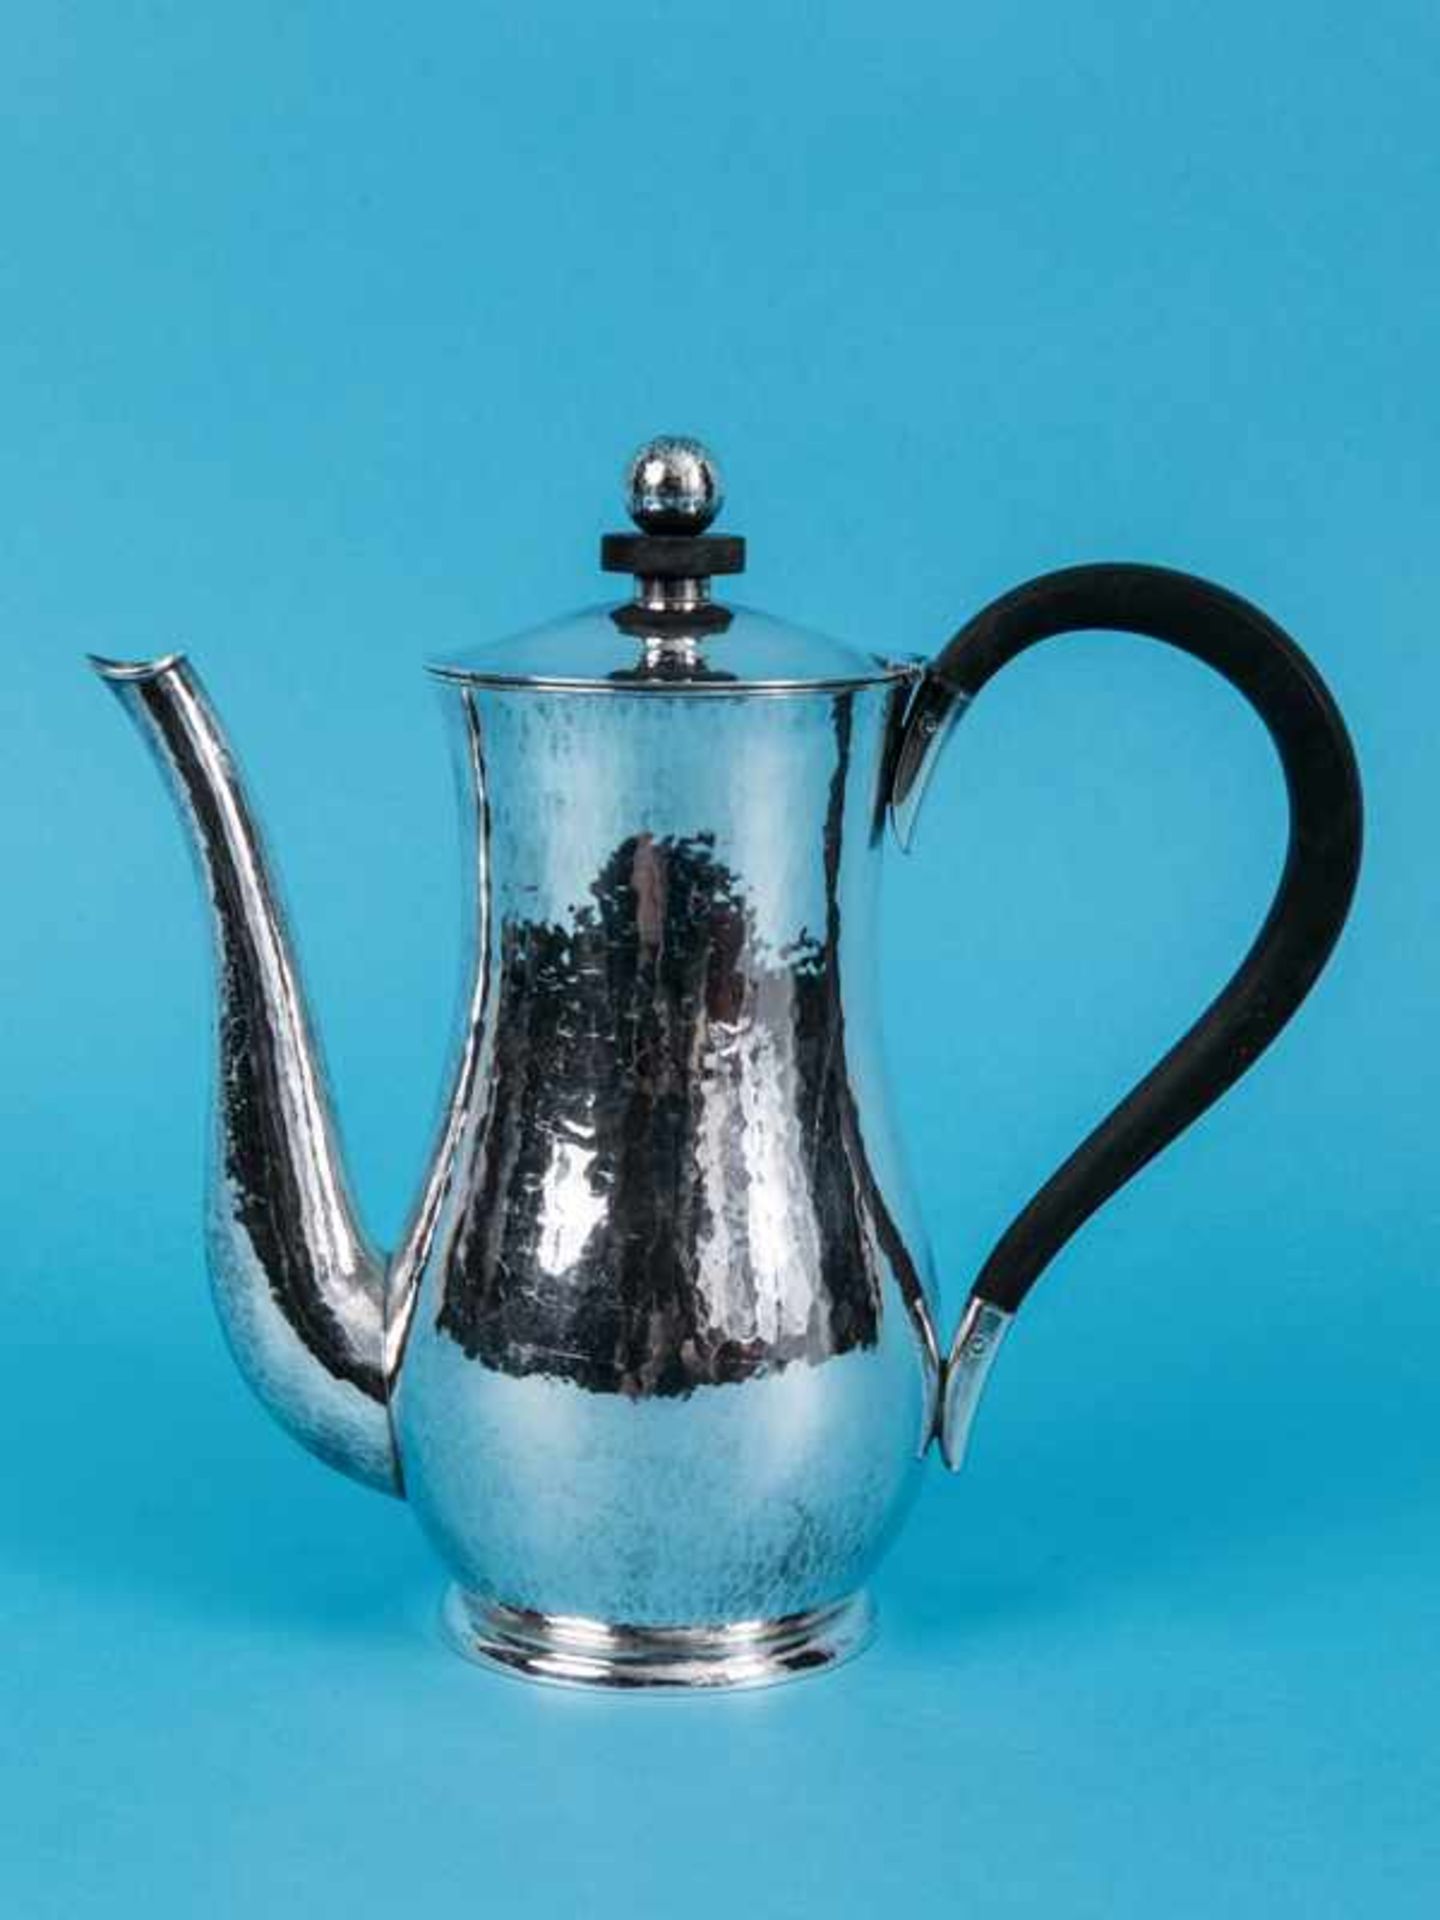 Kleine Kaffee- bzw. Mocca-Kanne, ca. 1930-60. 935/-Silber mit ebonisiertem Henkel und Knauf-